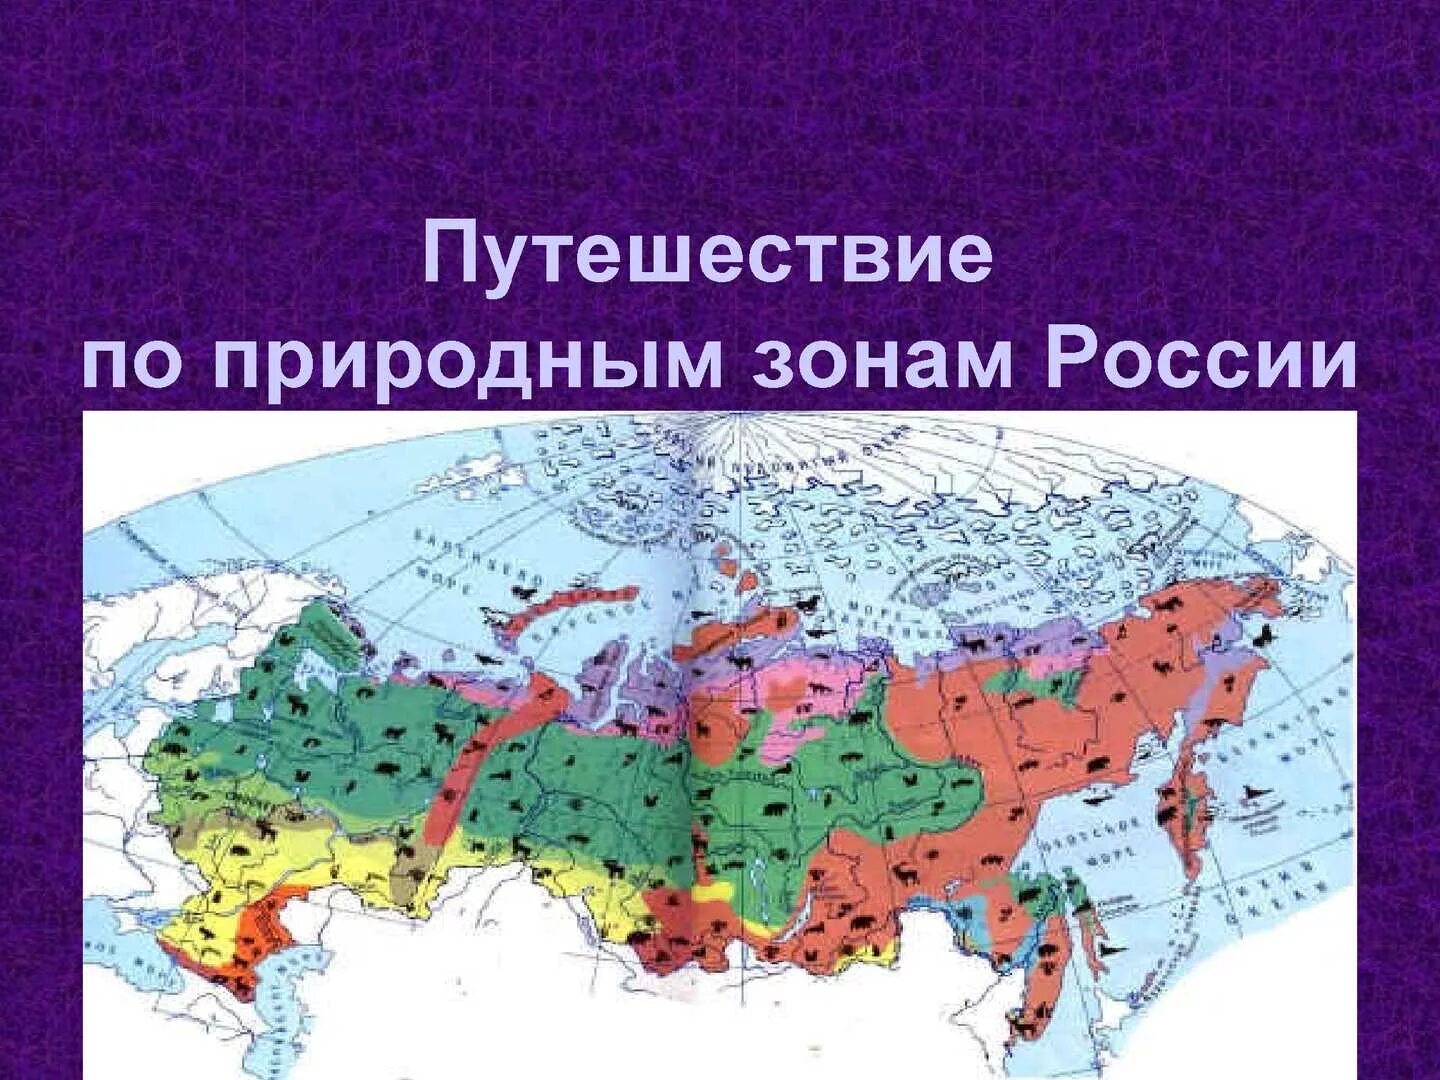 Зона тундры и лесотундры на карте России. Контурная карта зоны арктических пустынь тундры и лесотундры. Зона тундры на карте природных зон. Природныетзоны России. Укажите природную зону в которой можно встретить